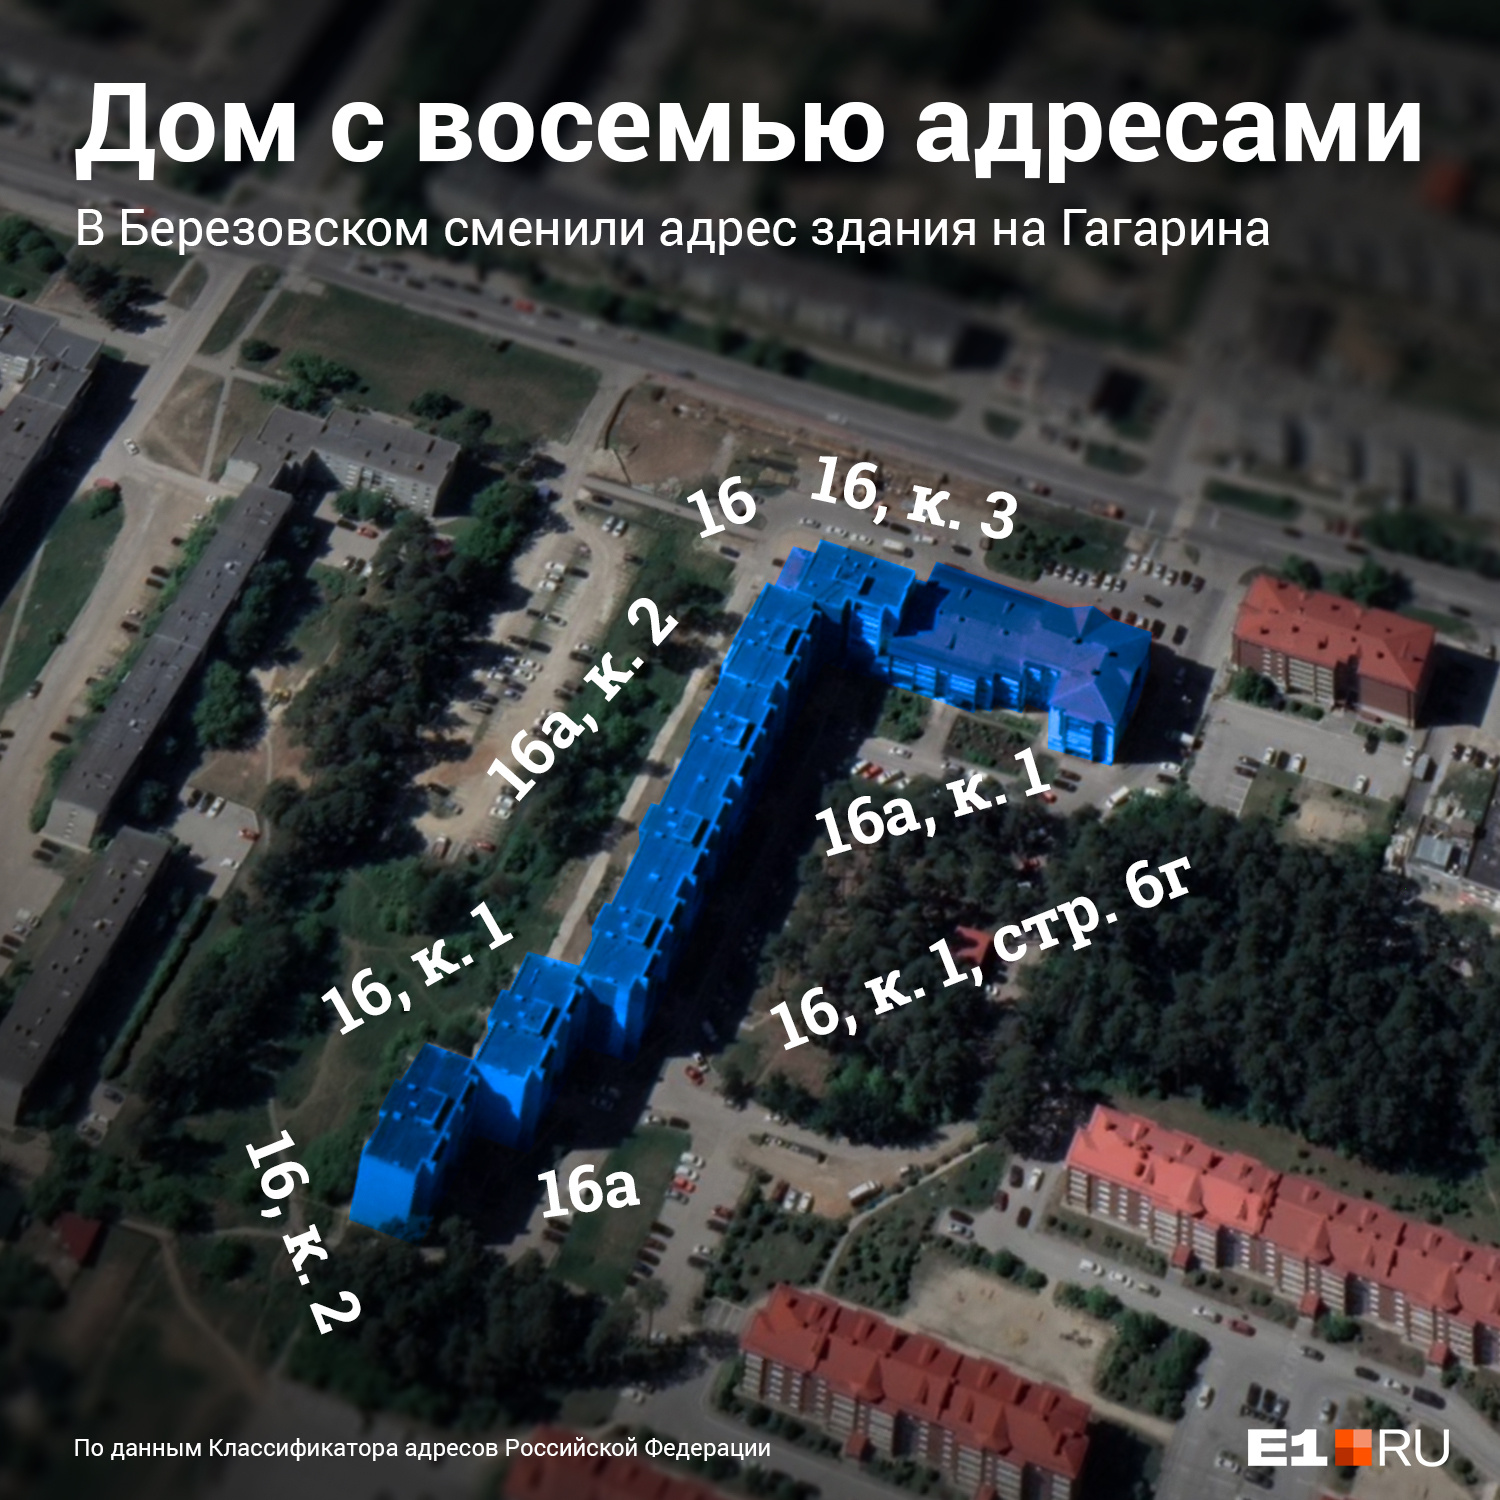 Дом на Гагарина, 16 строился больше тридцати лет на разных участках разными компаниями, из-за этого и произошла путаница